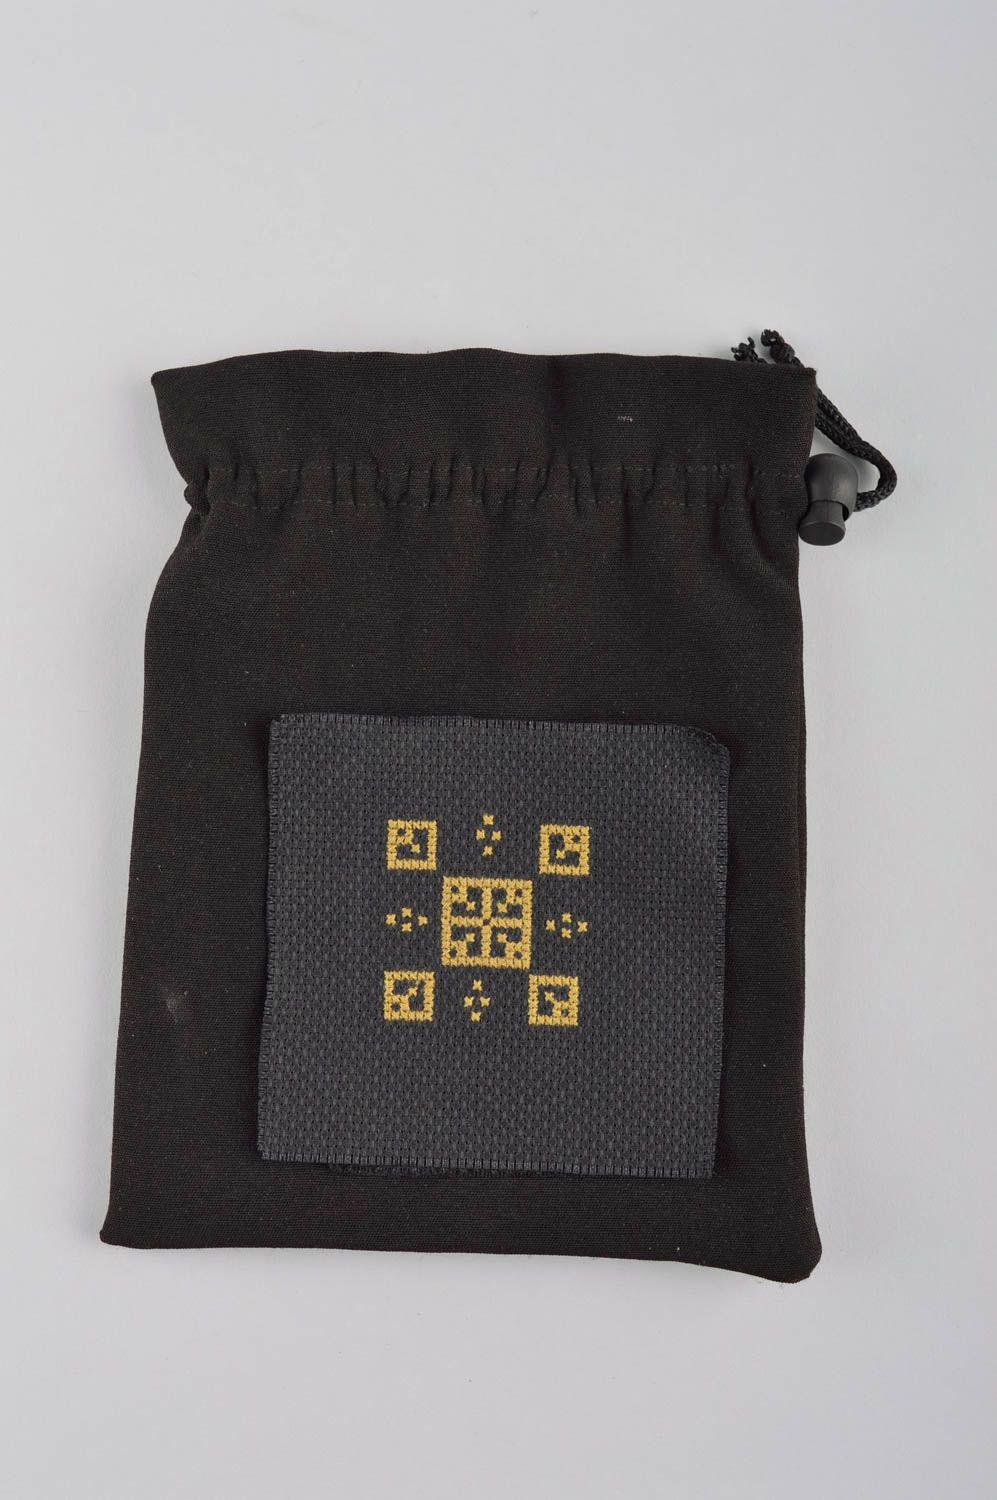 Кошелек из ткани мешочек для монет ручной работы с вышивкой женский кошелек фото 2